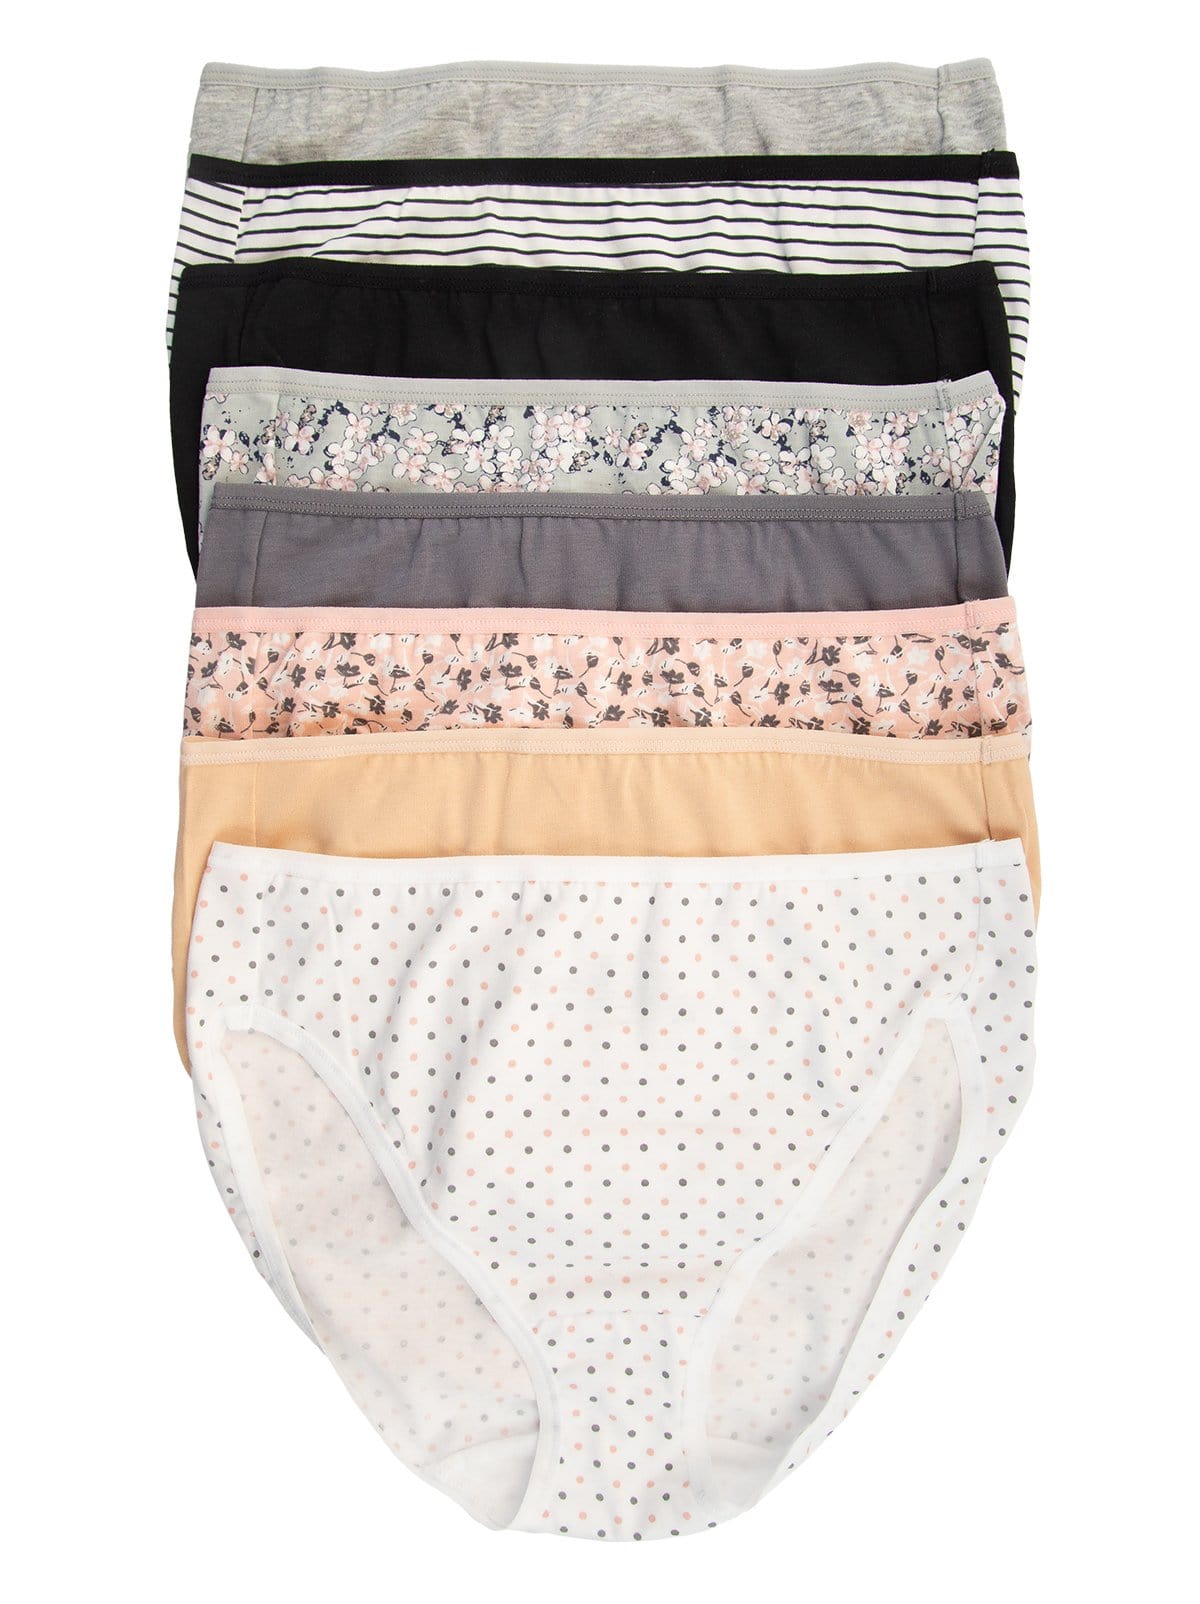 Felina Ladies Cotton Brief Underwear Panties 8 Pack Stretch HighWaist Soft  C4578